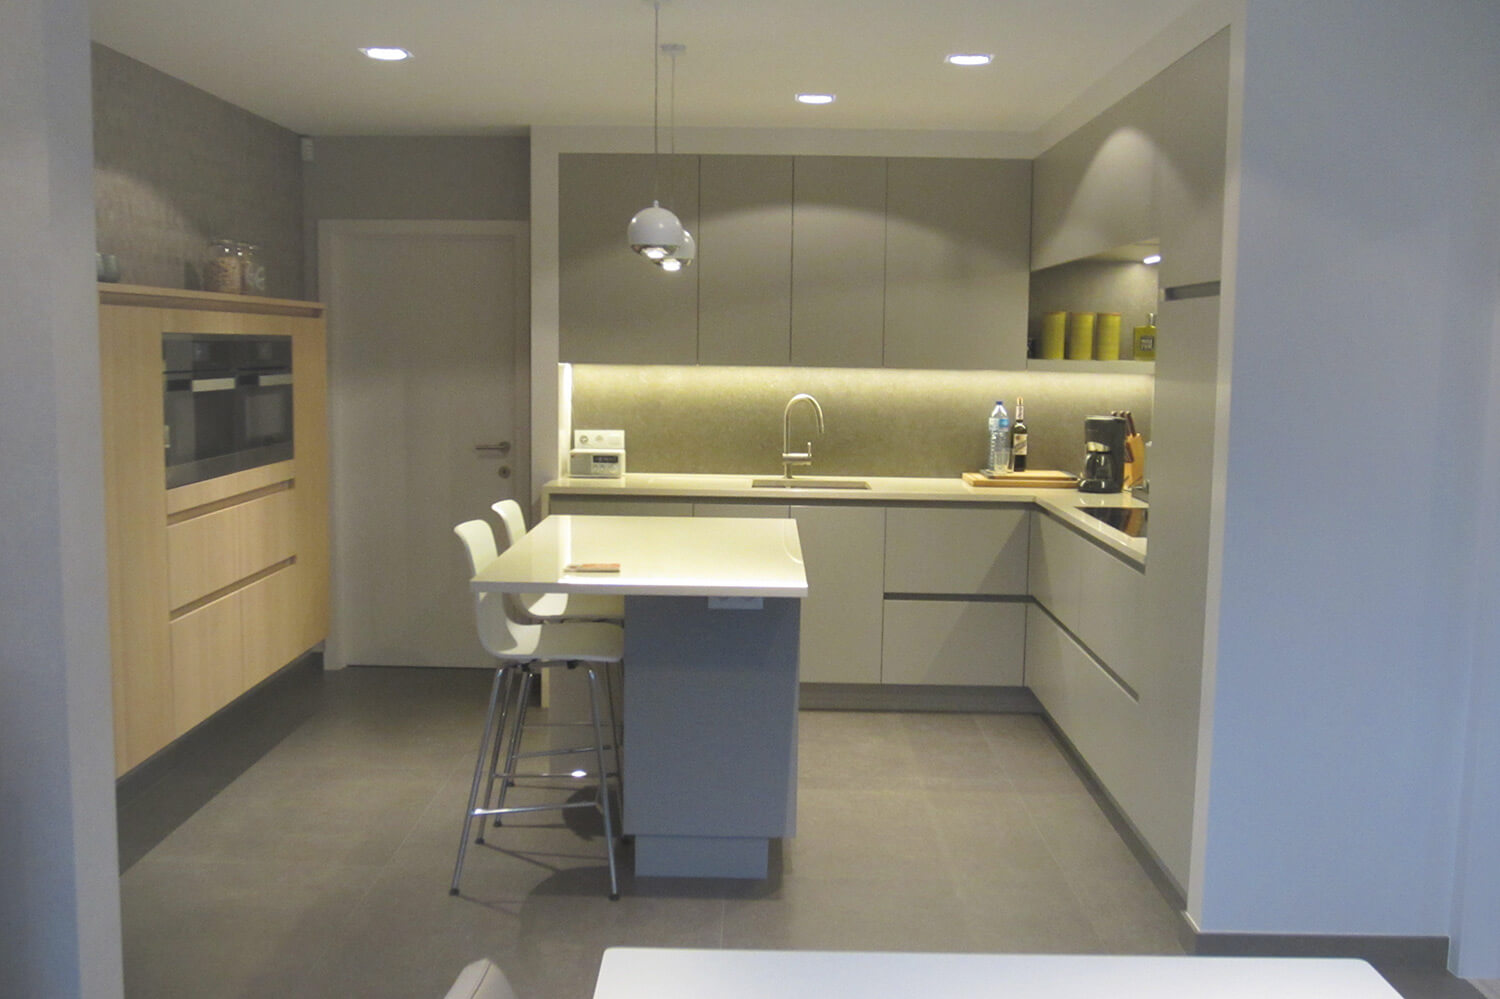 Totaaloverzicht van de keuken, rechts zijn er keukenkasten, het fornuis. Centraal een bartafel en links een ingebouwde kast met ingebouwde oven